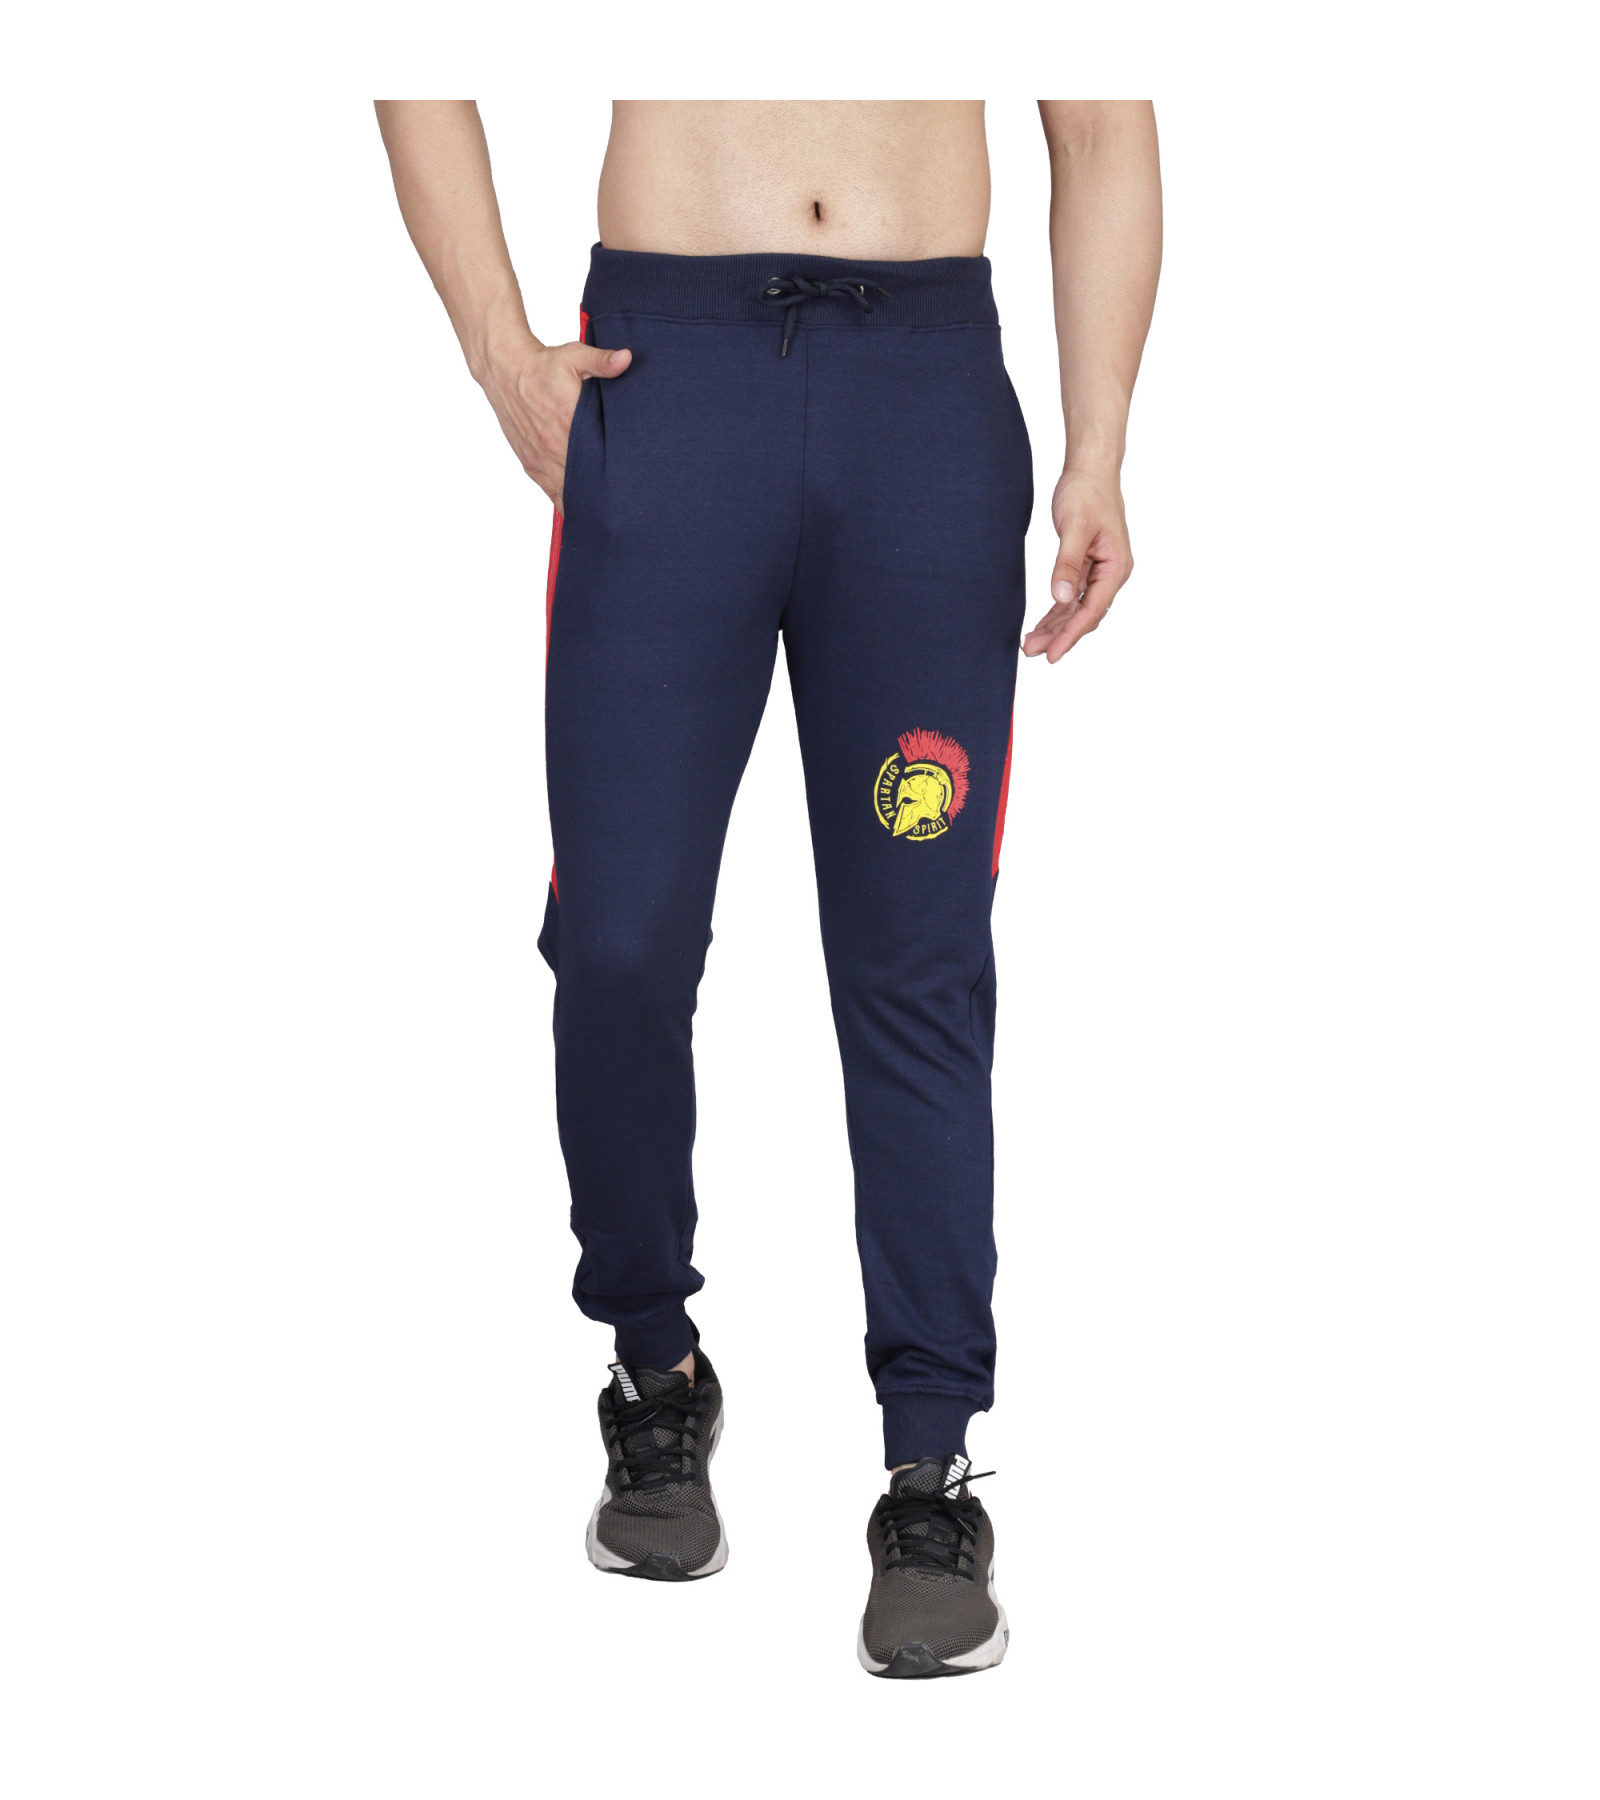 Men's Multi-Color Printed Track Pant